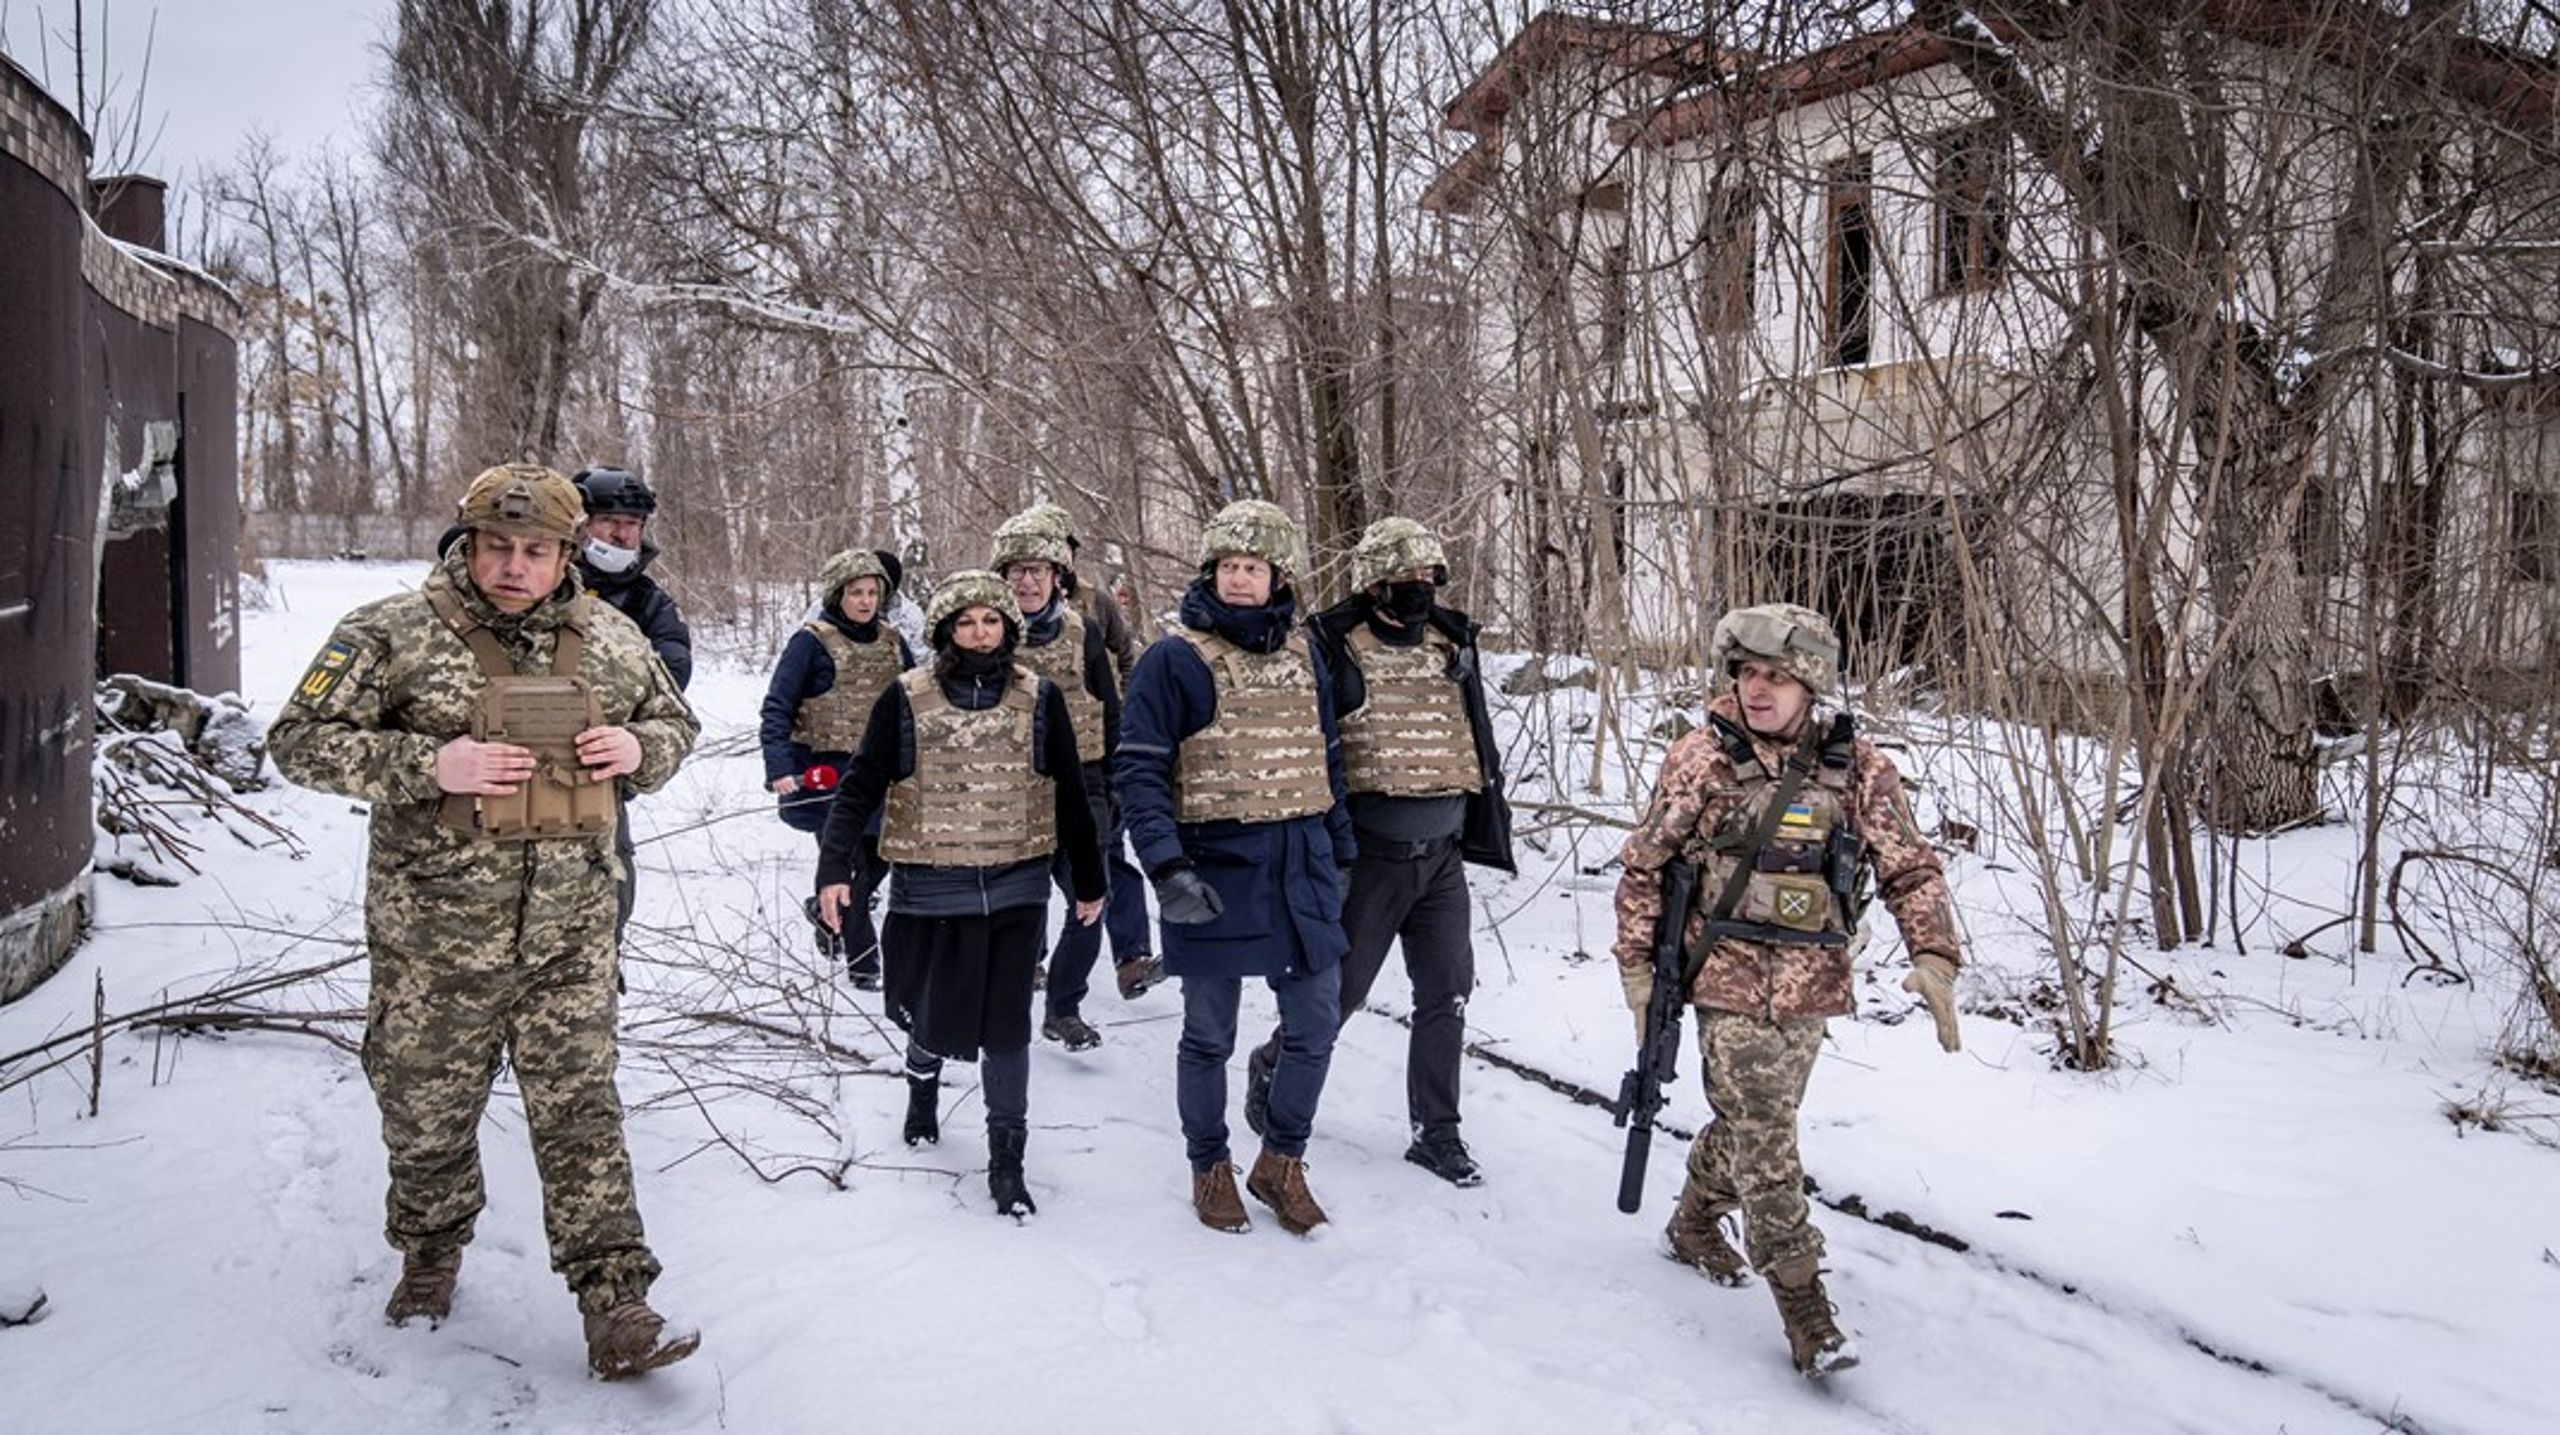 Udenrigsminister Jeppe Kofod besøgte i sidste uge Ukraine samtidig med, at Udenrigsministeriet og Forsvarsministeriet præsenterede en donation på 164 millioner kroner over fire år til et støtteprogram i landet.